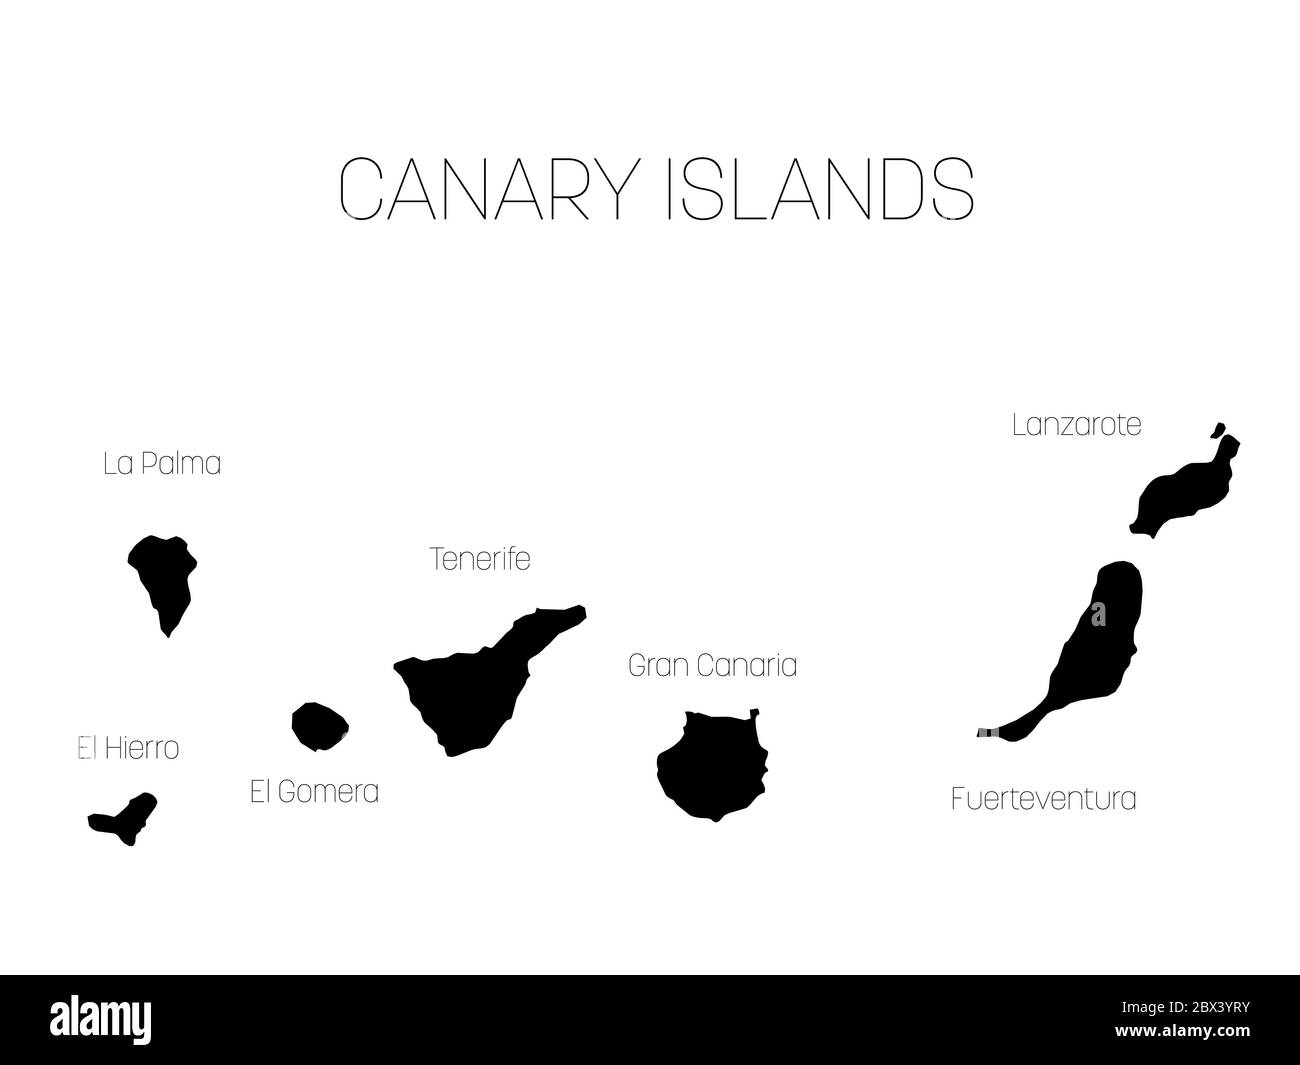 Mappa delle Isole Canarie, Spagna, con etichette di ogni isola - El Hierro, la Palma, la Gomera, Tenerife, Gran Canaria, Fuerteventura e Lanzarote. Silhouette vettoriale nera su sfondo bianco. Illustrazione Vettoriale